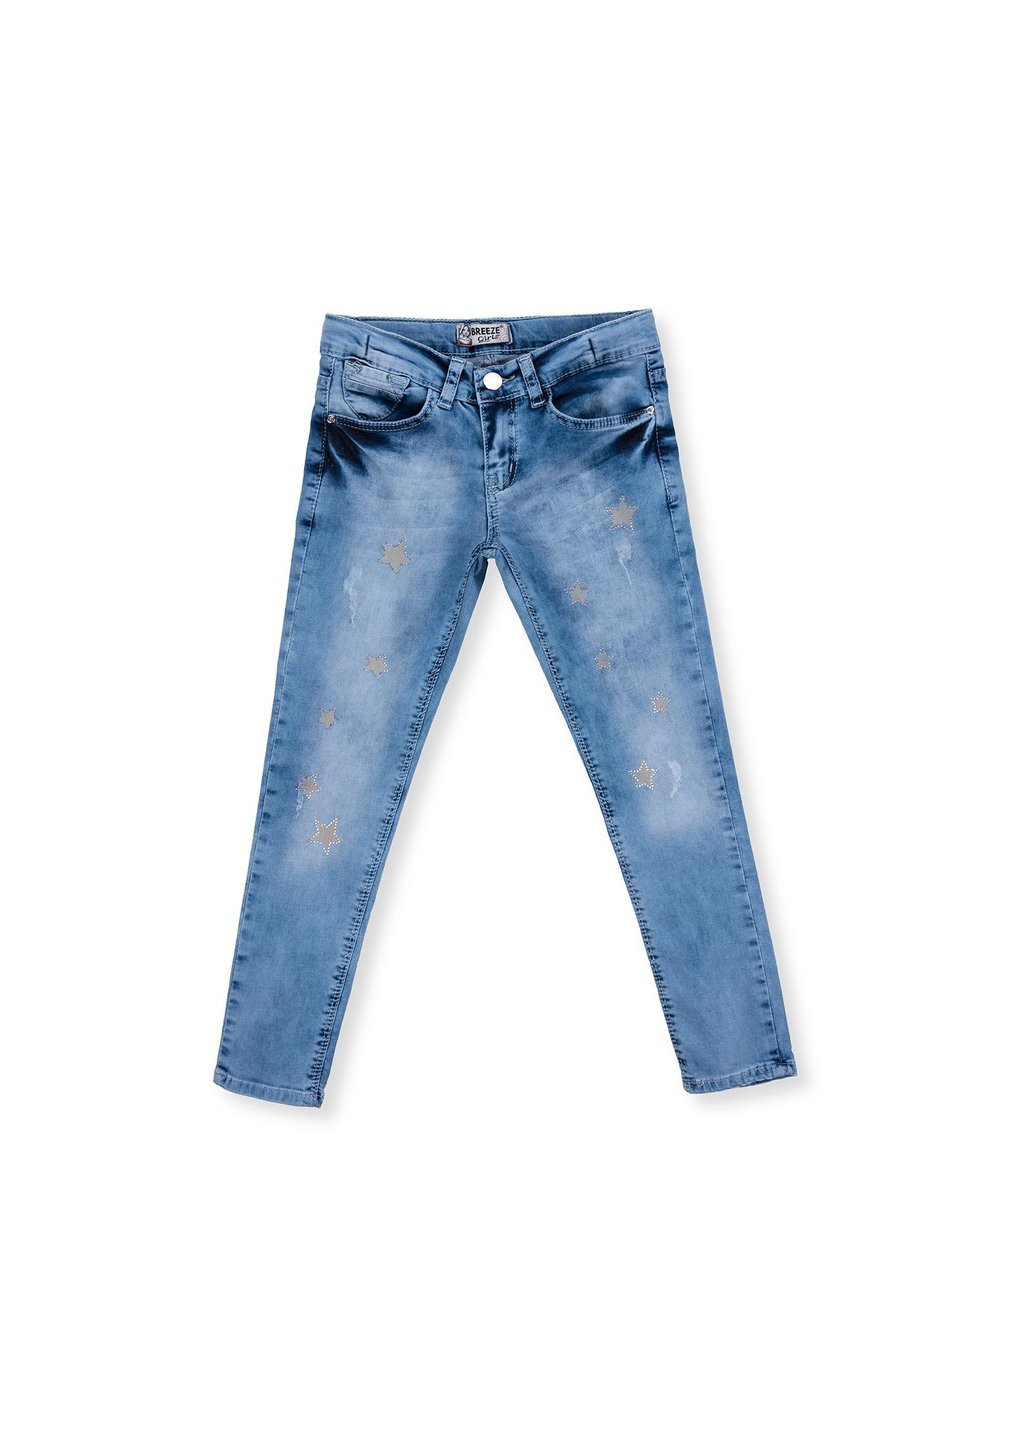 Голубые демисезонные джинсы со звездочками (20109-128g-blue) Breeze